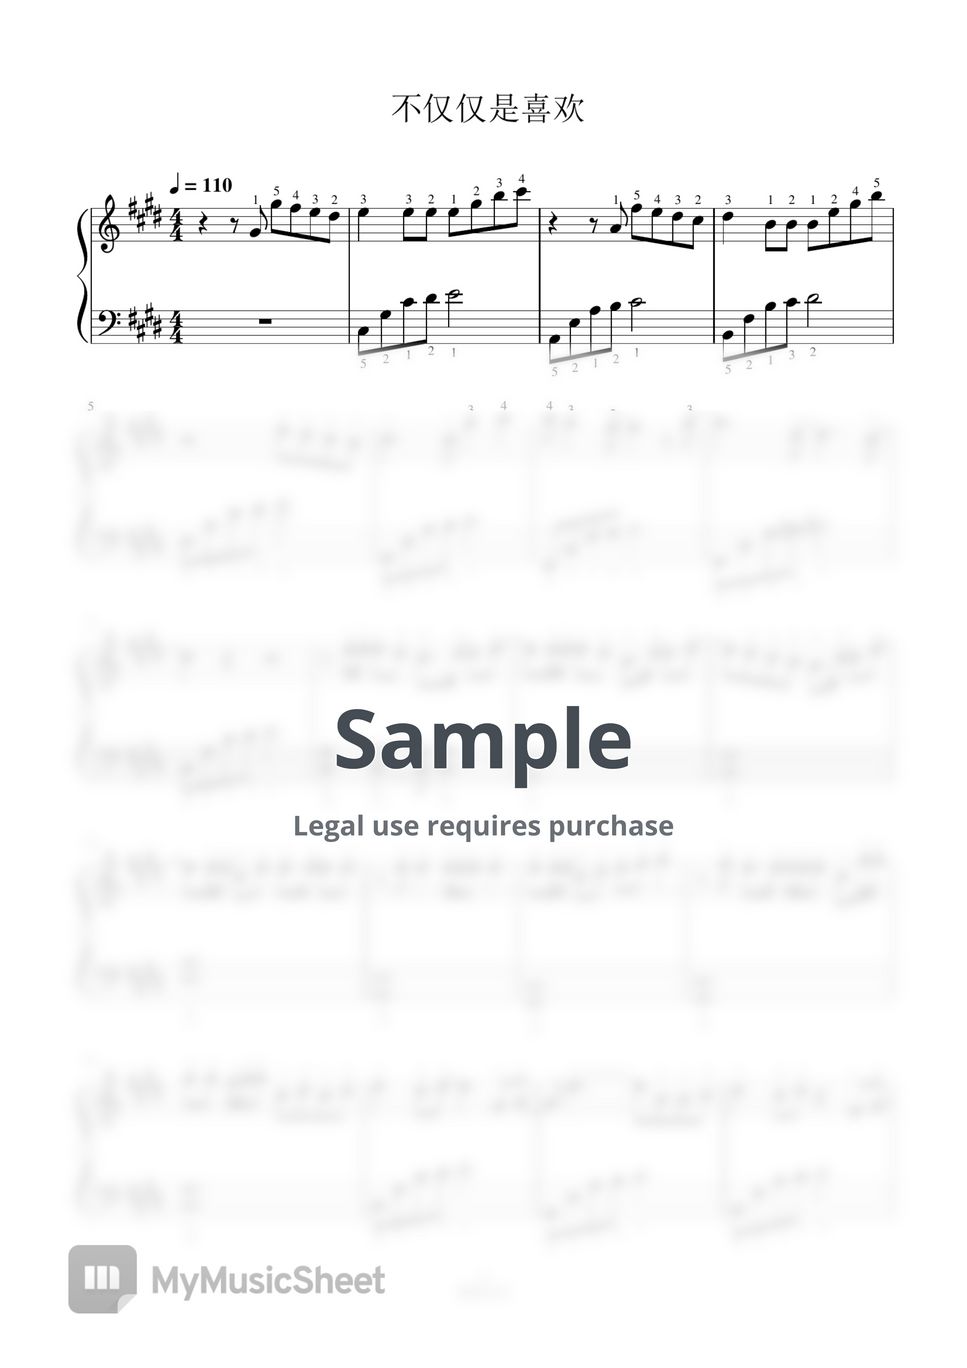 萧全 - 不仅仅是喜欢-全指法钢琴谱高清正版完整版 (Full Fingering Piano Score) by 紫韵音乐